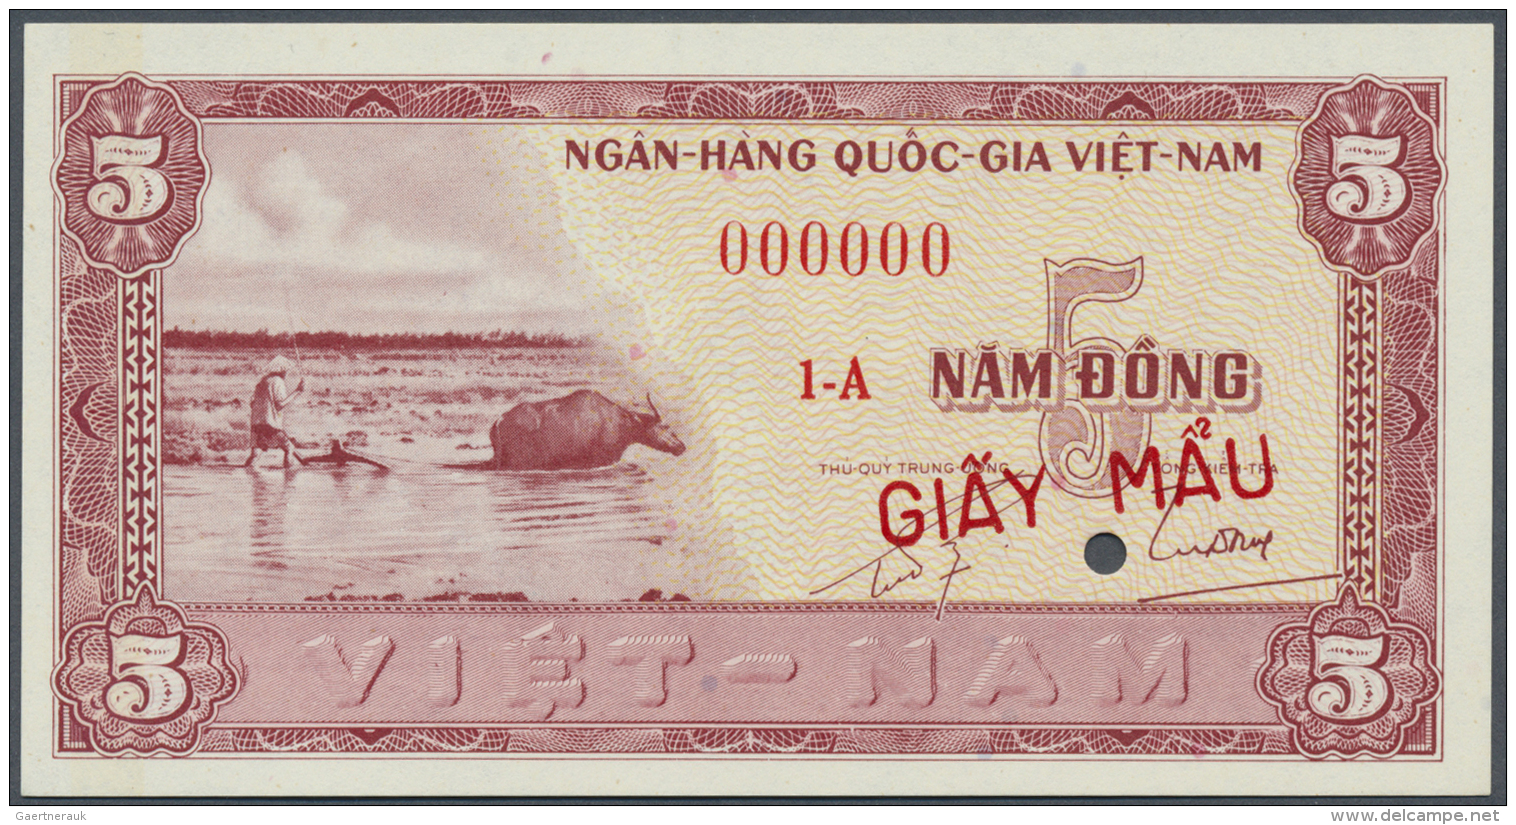 South Vietnam / S&uuml;d Vietnam: 5 Dong ND Specimen P. 13s, In Condition: UNC. - Vietnam